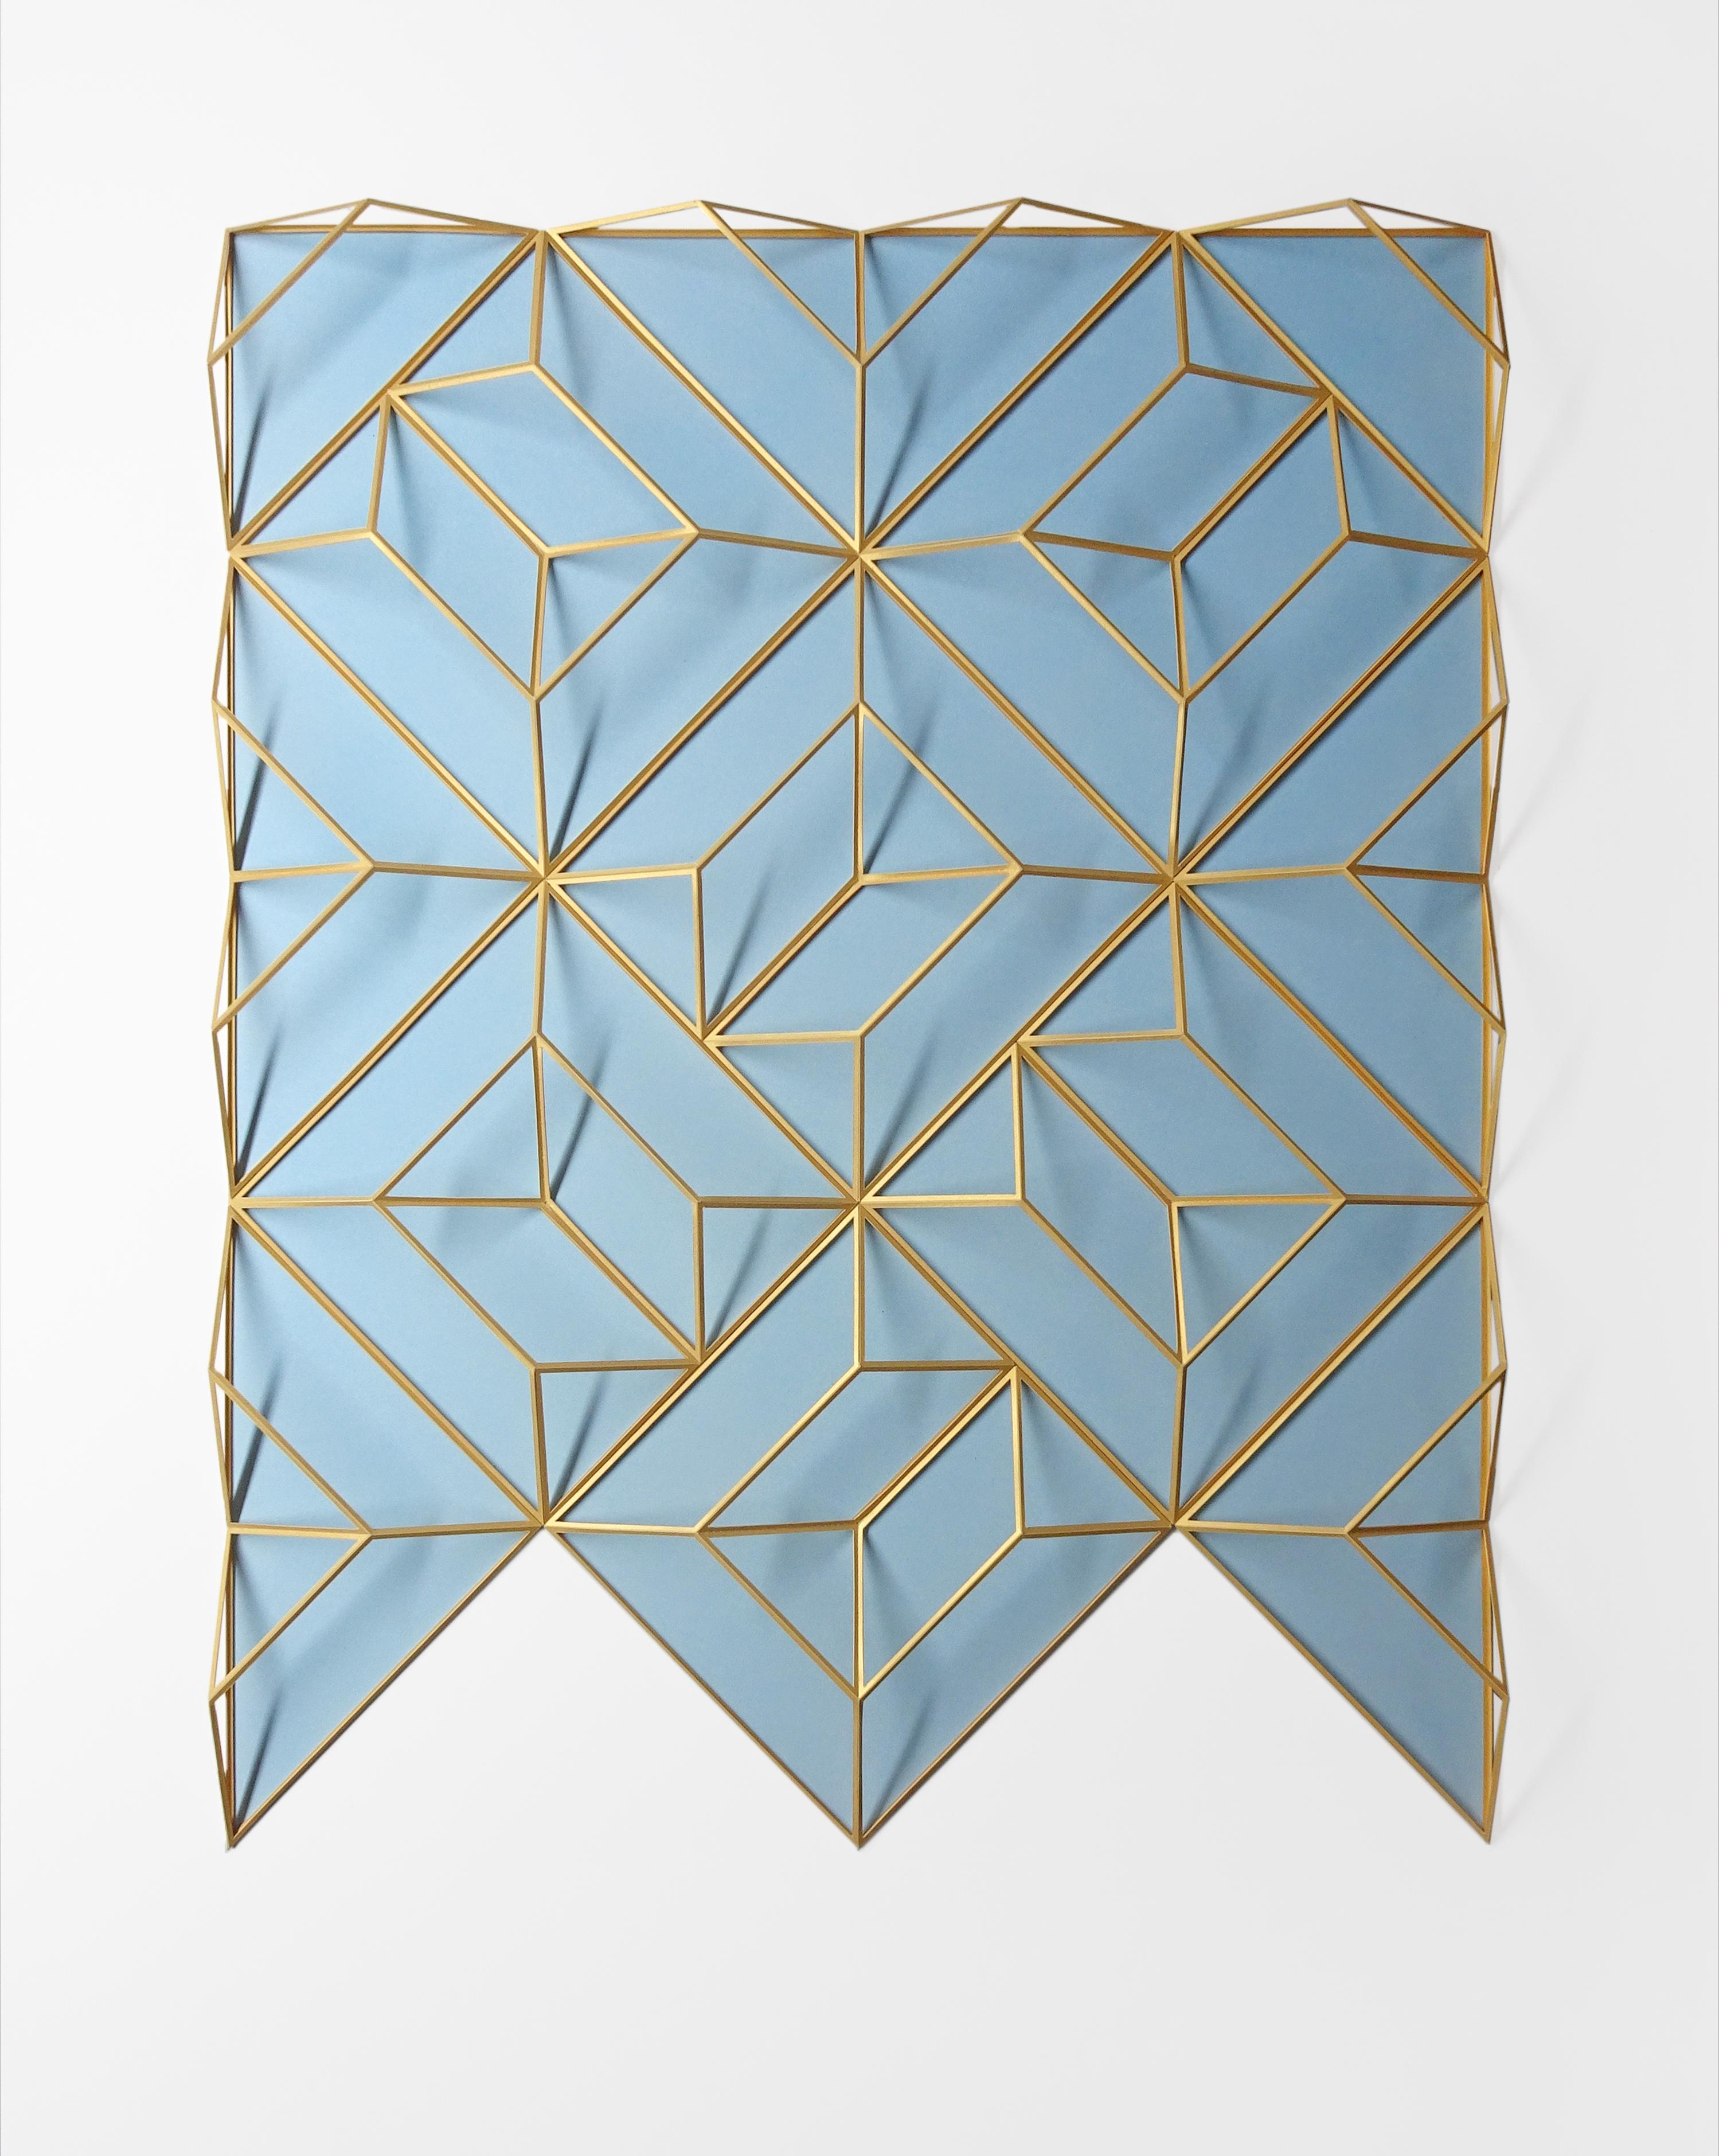 SCSC 38 Gold Blau 2, zeitgenössische abstrakte Papierskulptur, 2021